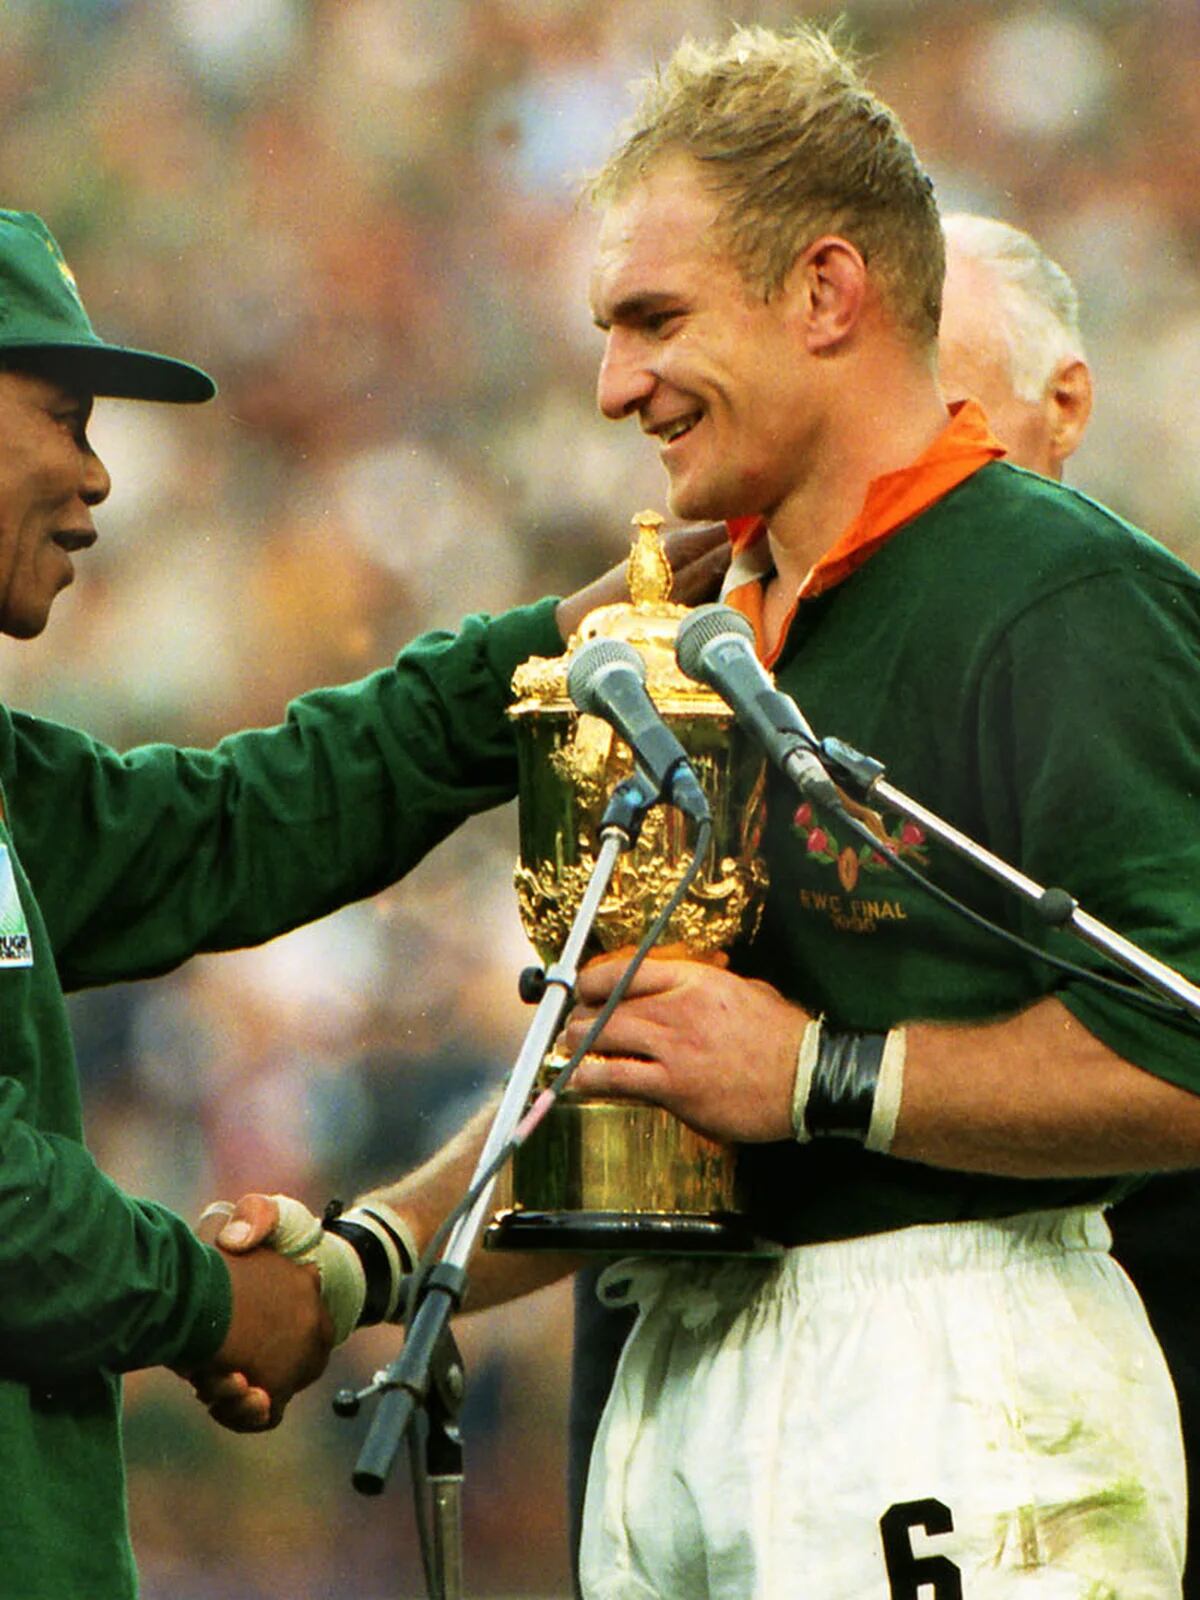 La maldición de la final del Mundial de rugby del 95